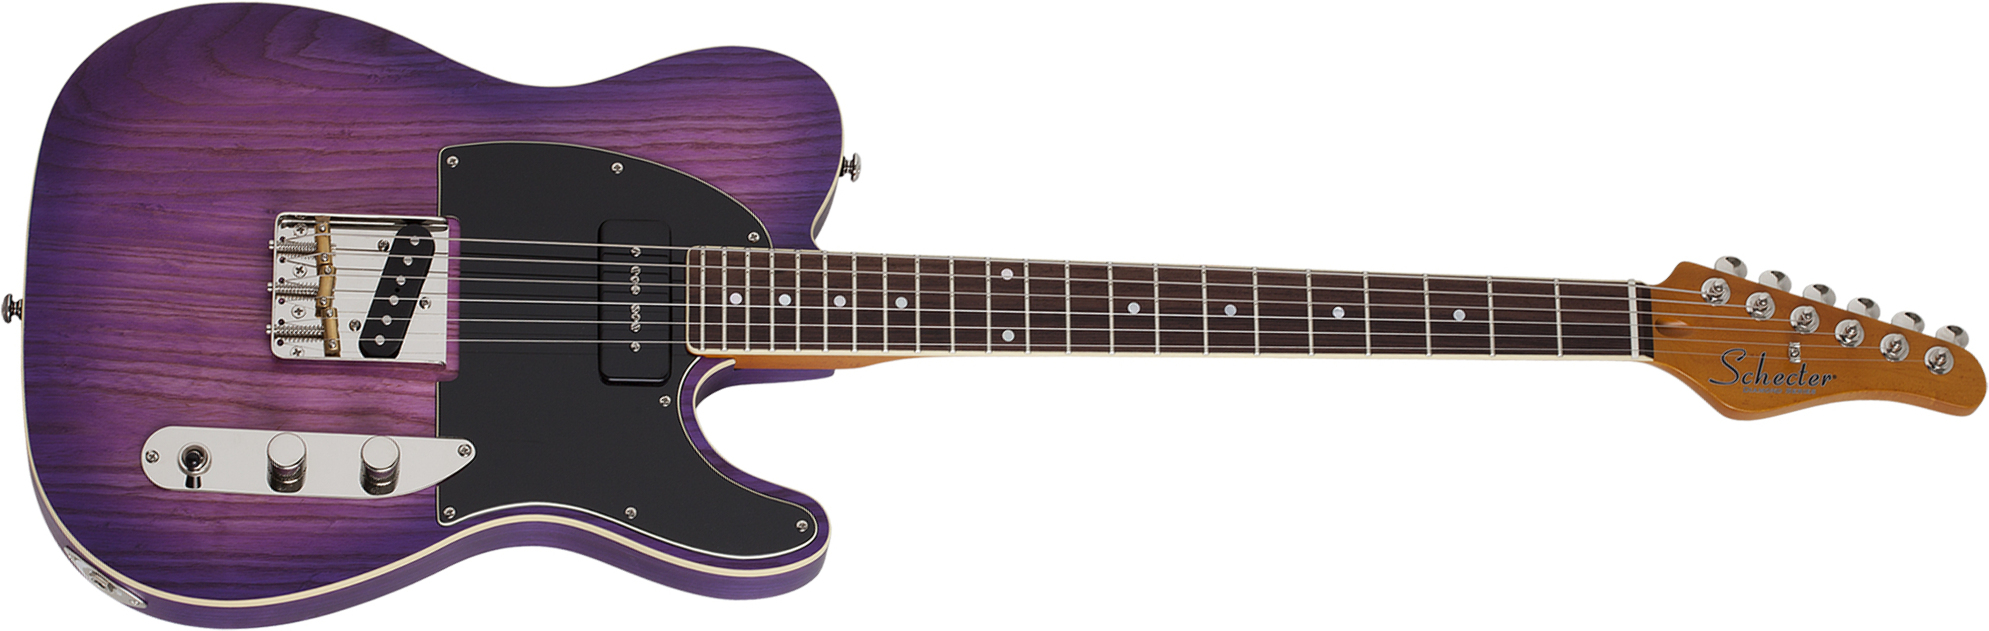 Schecter Pt Special 2s Ht Rw - Purple Burst Pearl - E-Gitarre in Teleform - Main picture